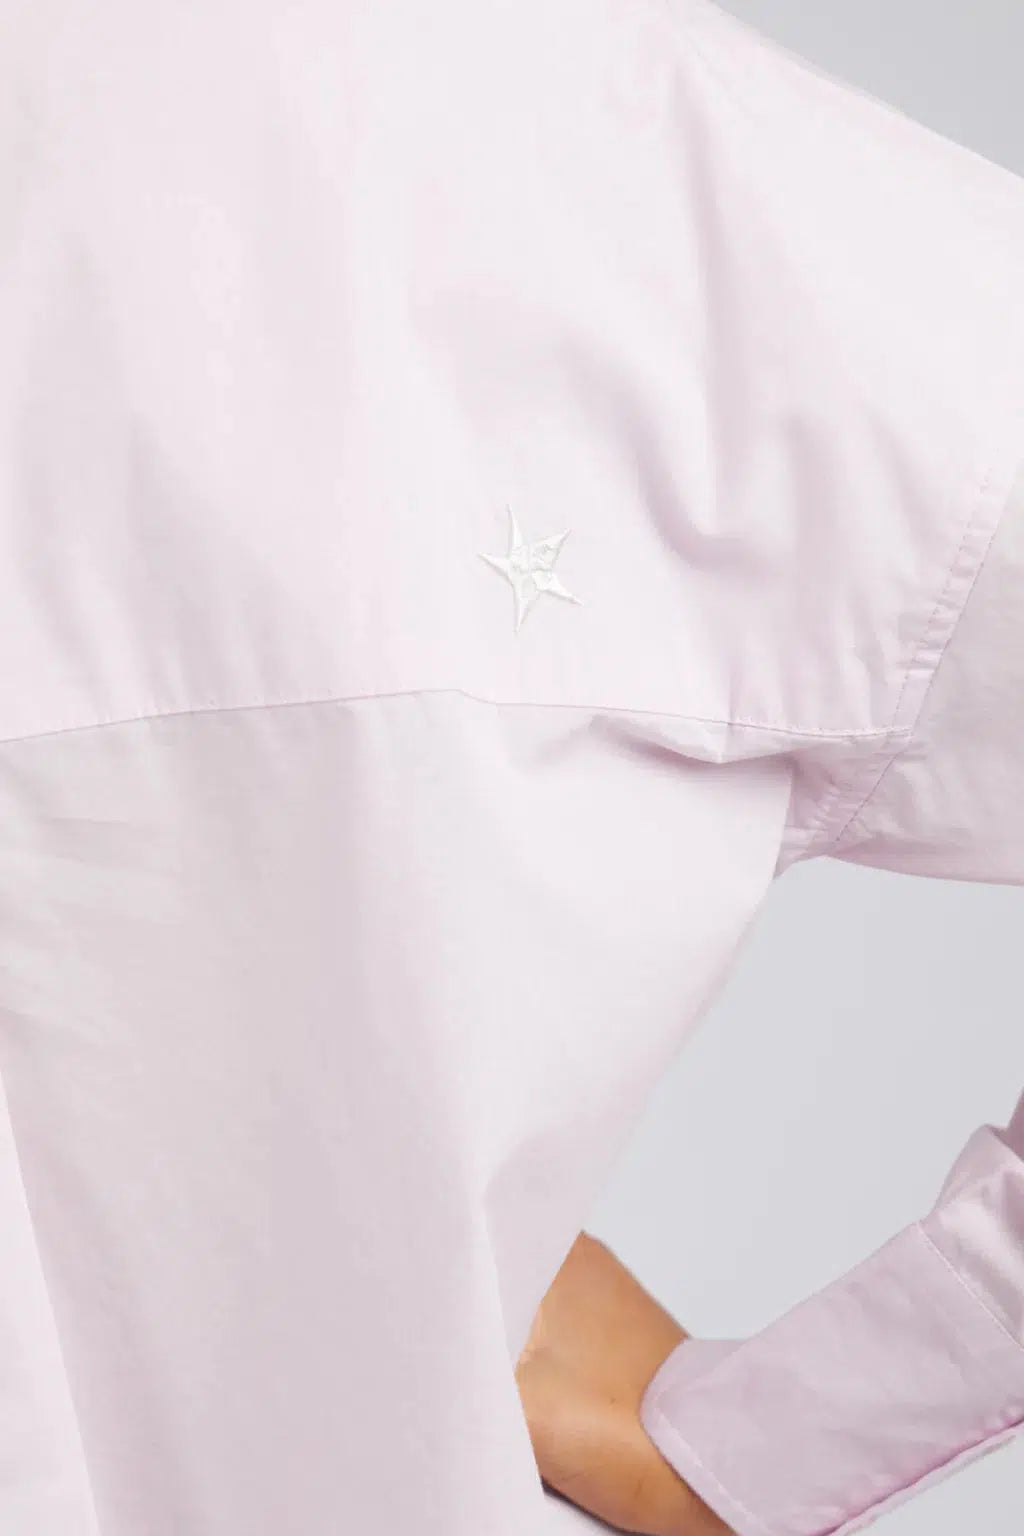 Delia Shirt - Pale Pink-Elm Lifestyle-Lima & Co